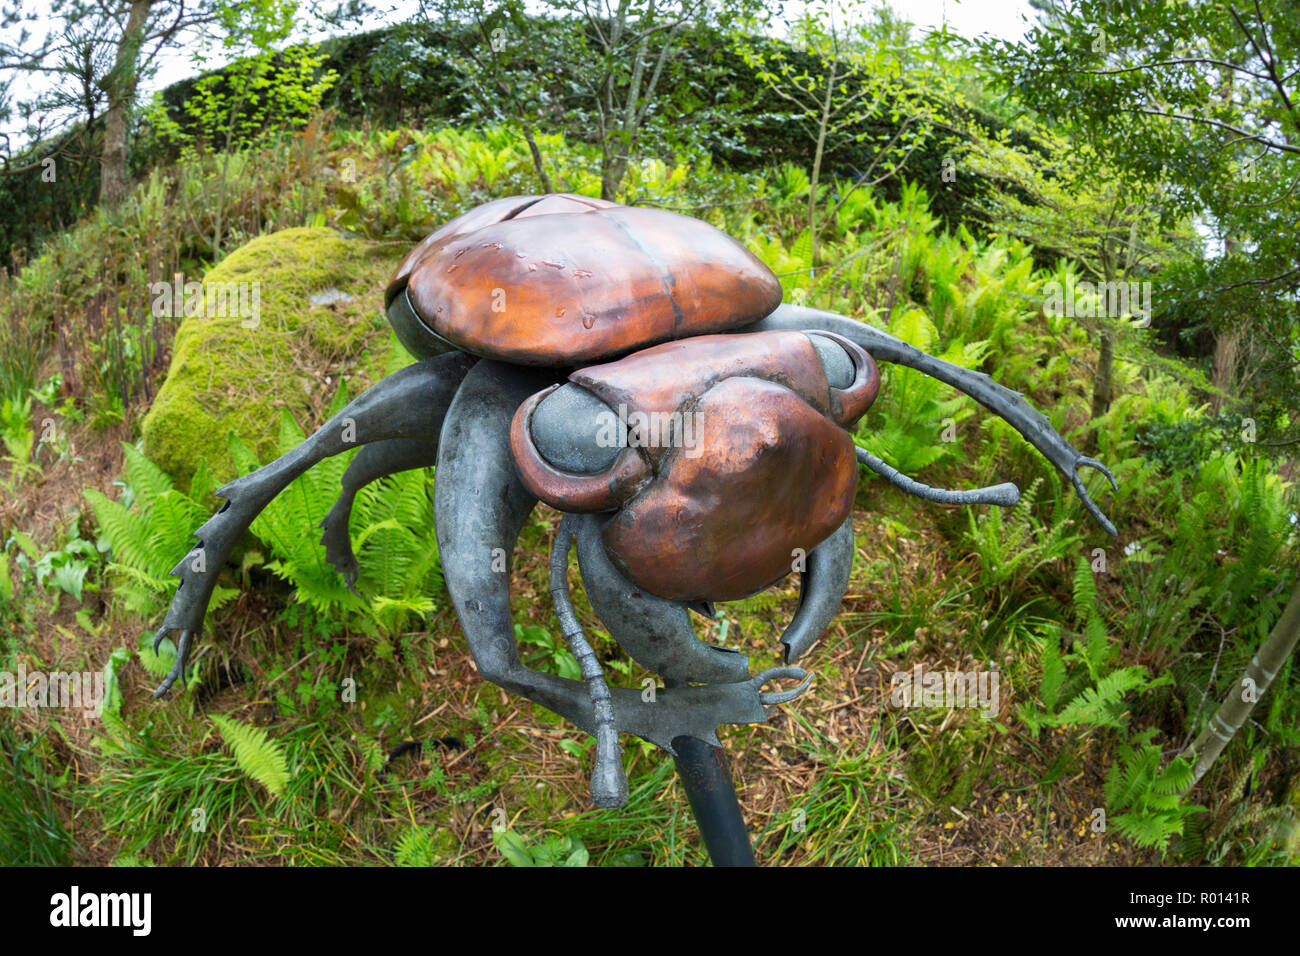 Coleottero gigante scultura alla famosa attrazione turistica progetto Eden, Fohey, Cornwall, Inghilterra. Foto Stock